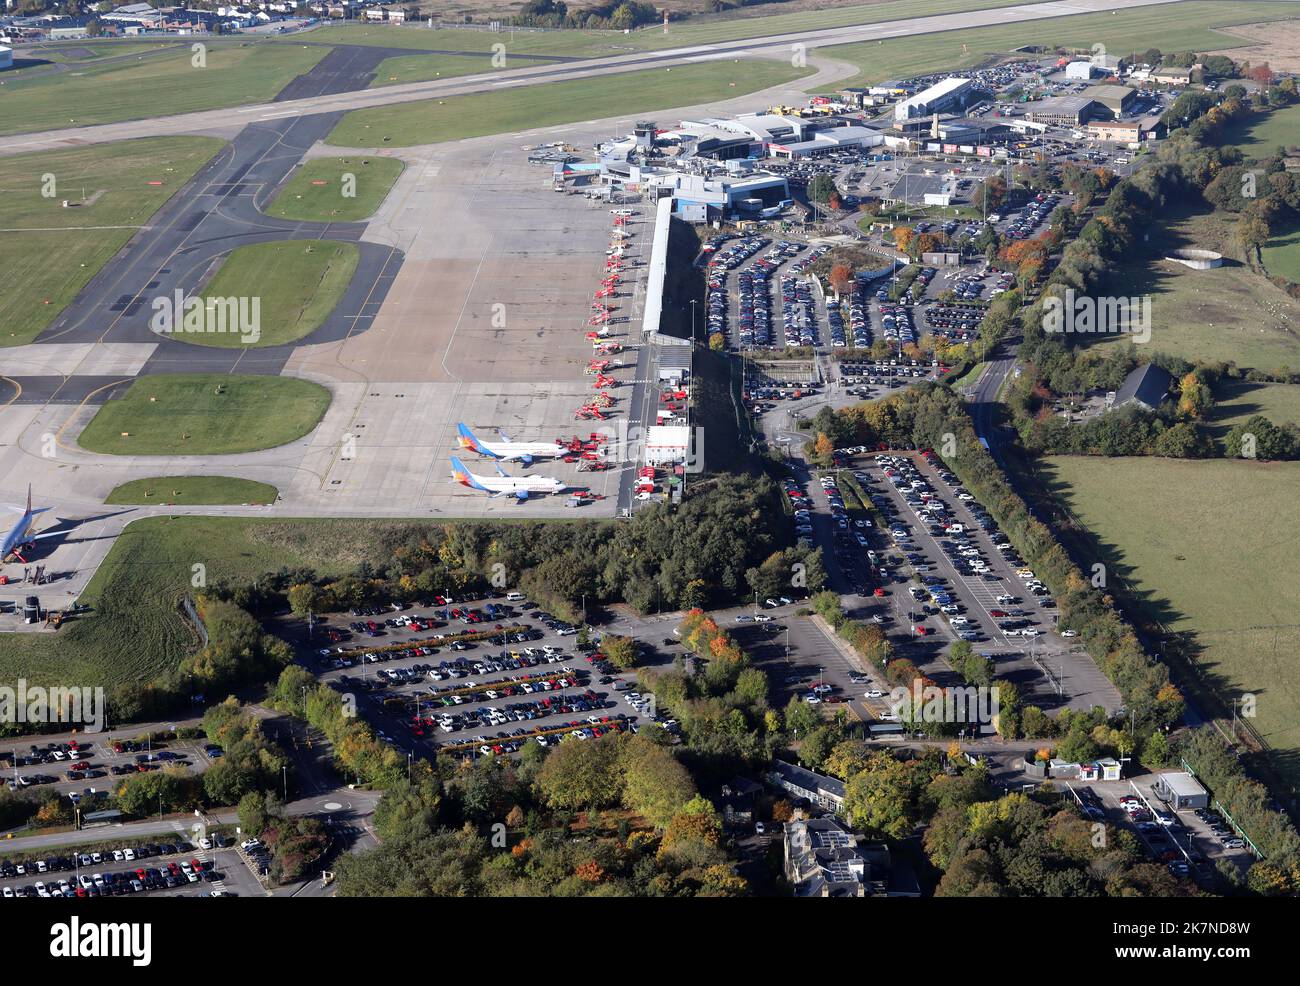 Luftaufnahme des Flughafenparkplatzes und des Vorfeldes am internationalen Flughafen Leeds Bradford, Großbritannien Stockfoto